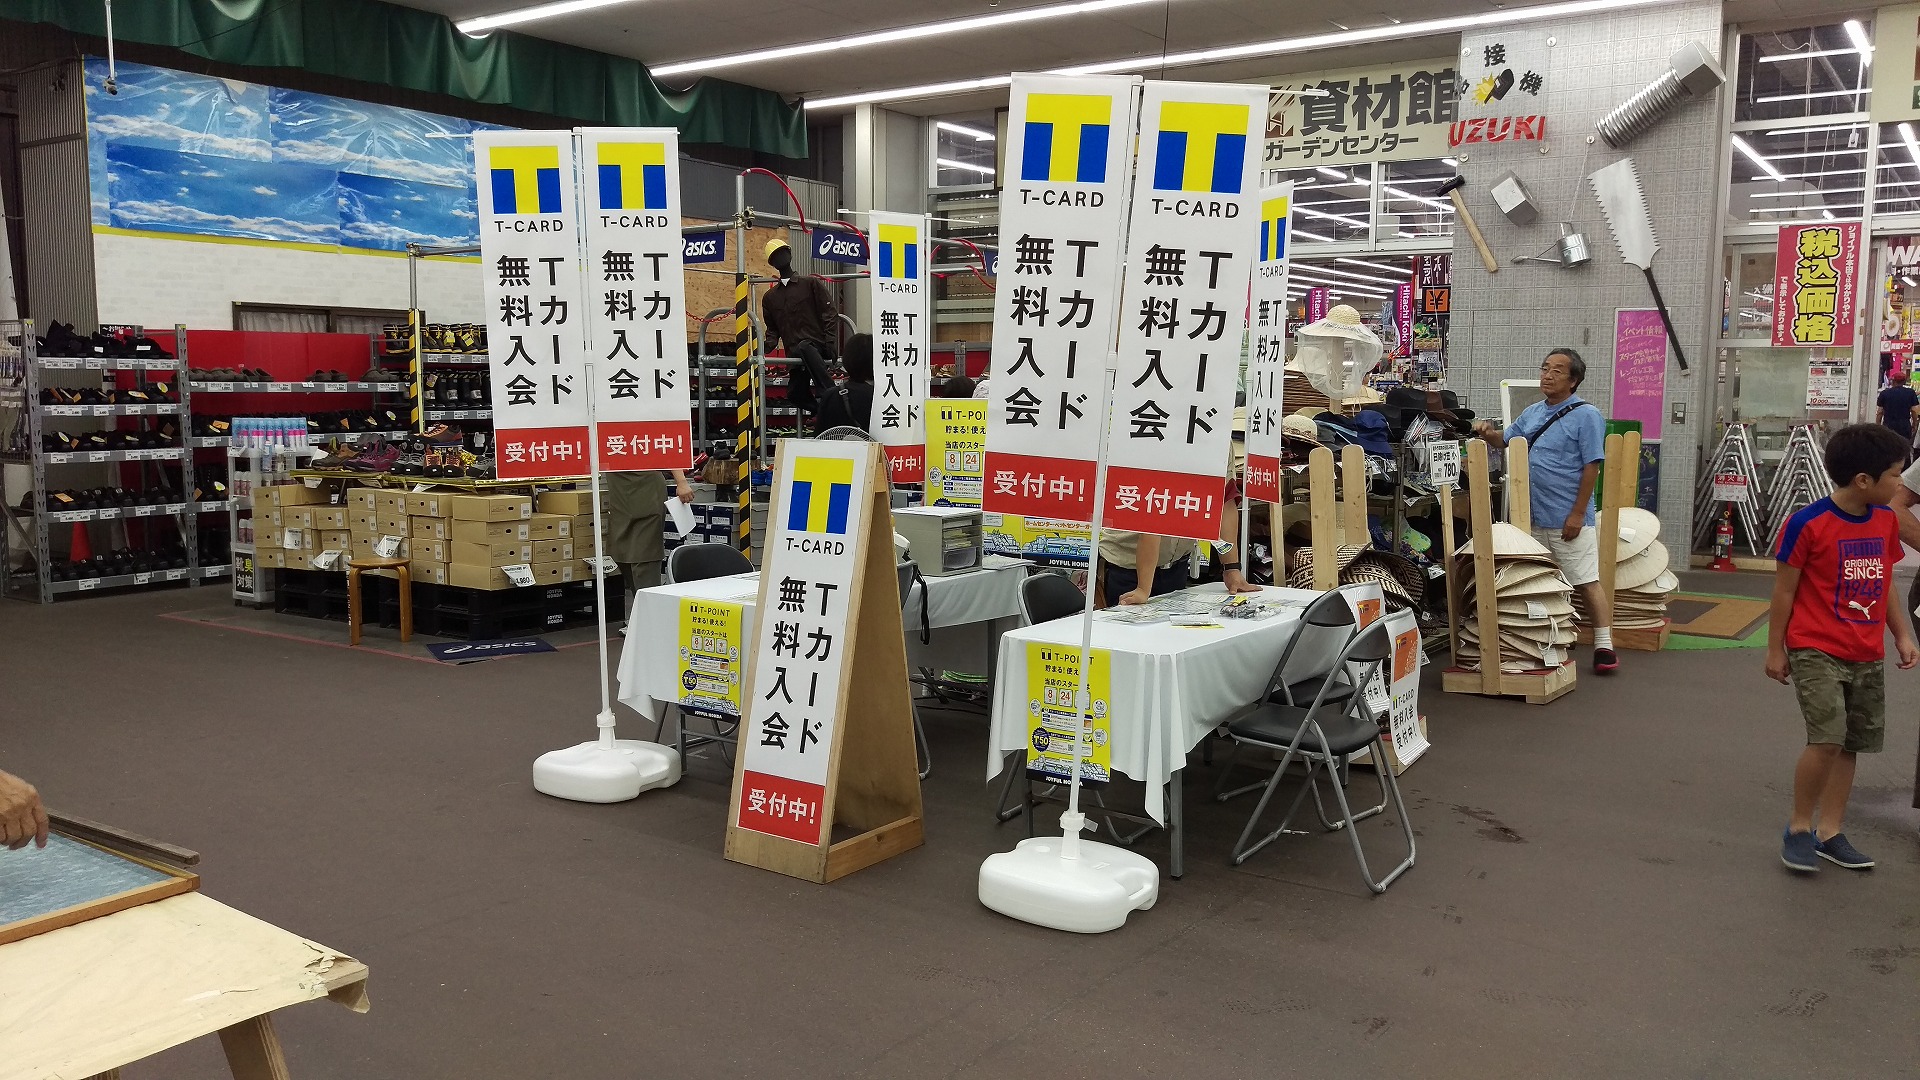 ジョイフル本田 千葉ニュータウン店 Tポイントカード 8月24日開始 千葉ニュータウンオンライン